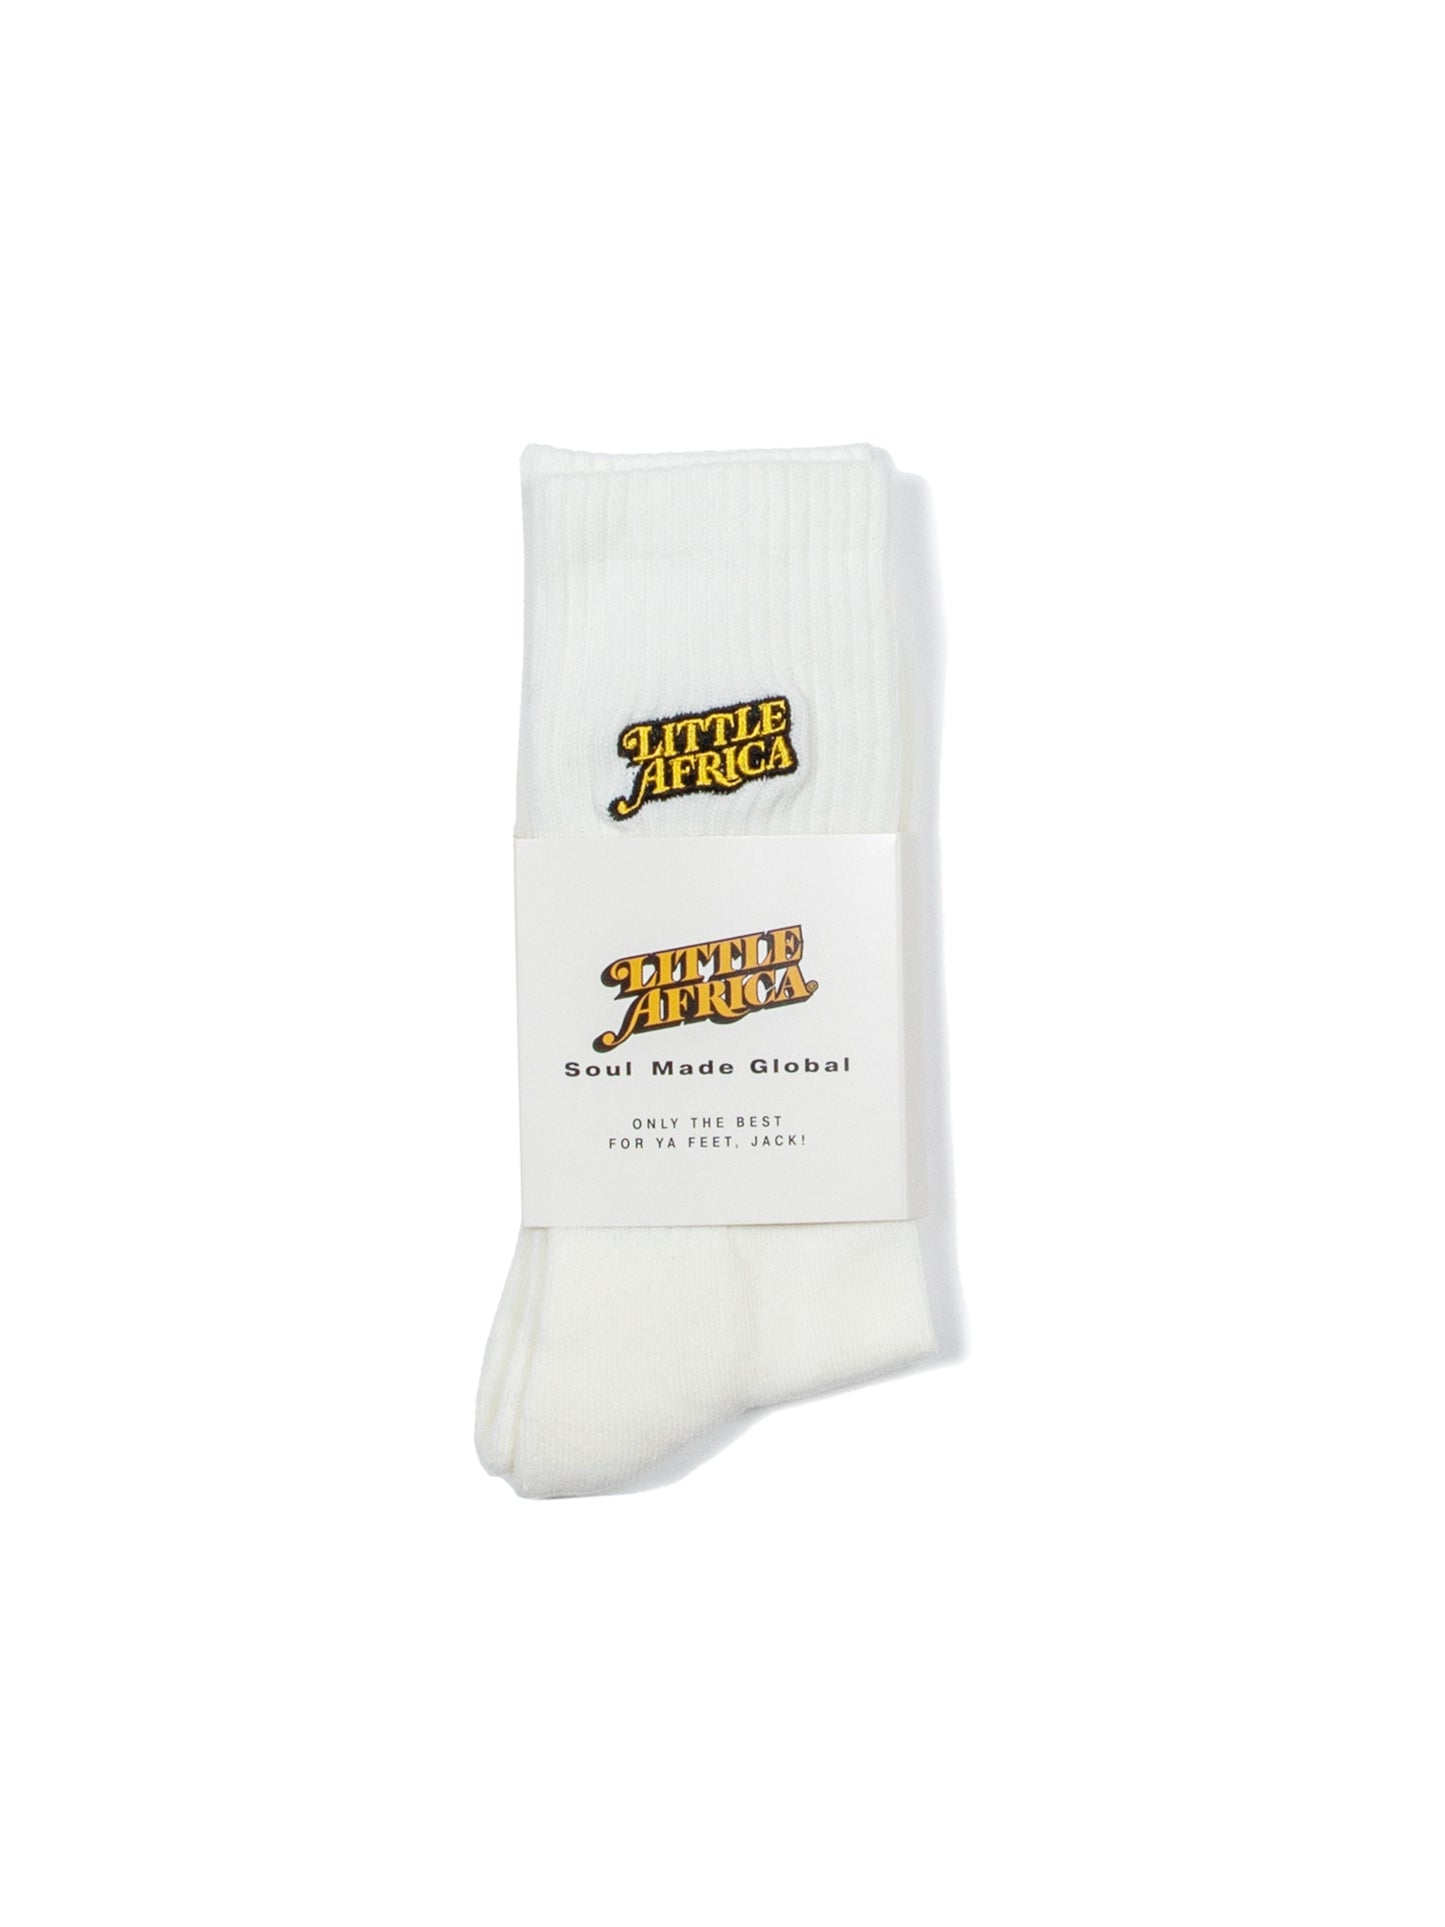 LITTLE AFRICA "Trademark Logo Socks" (White)